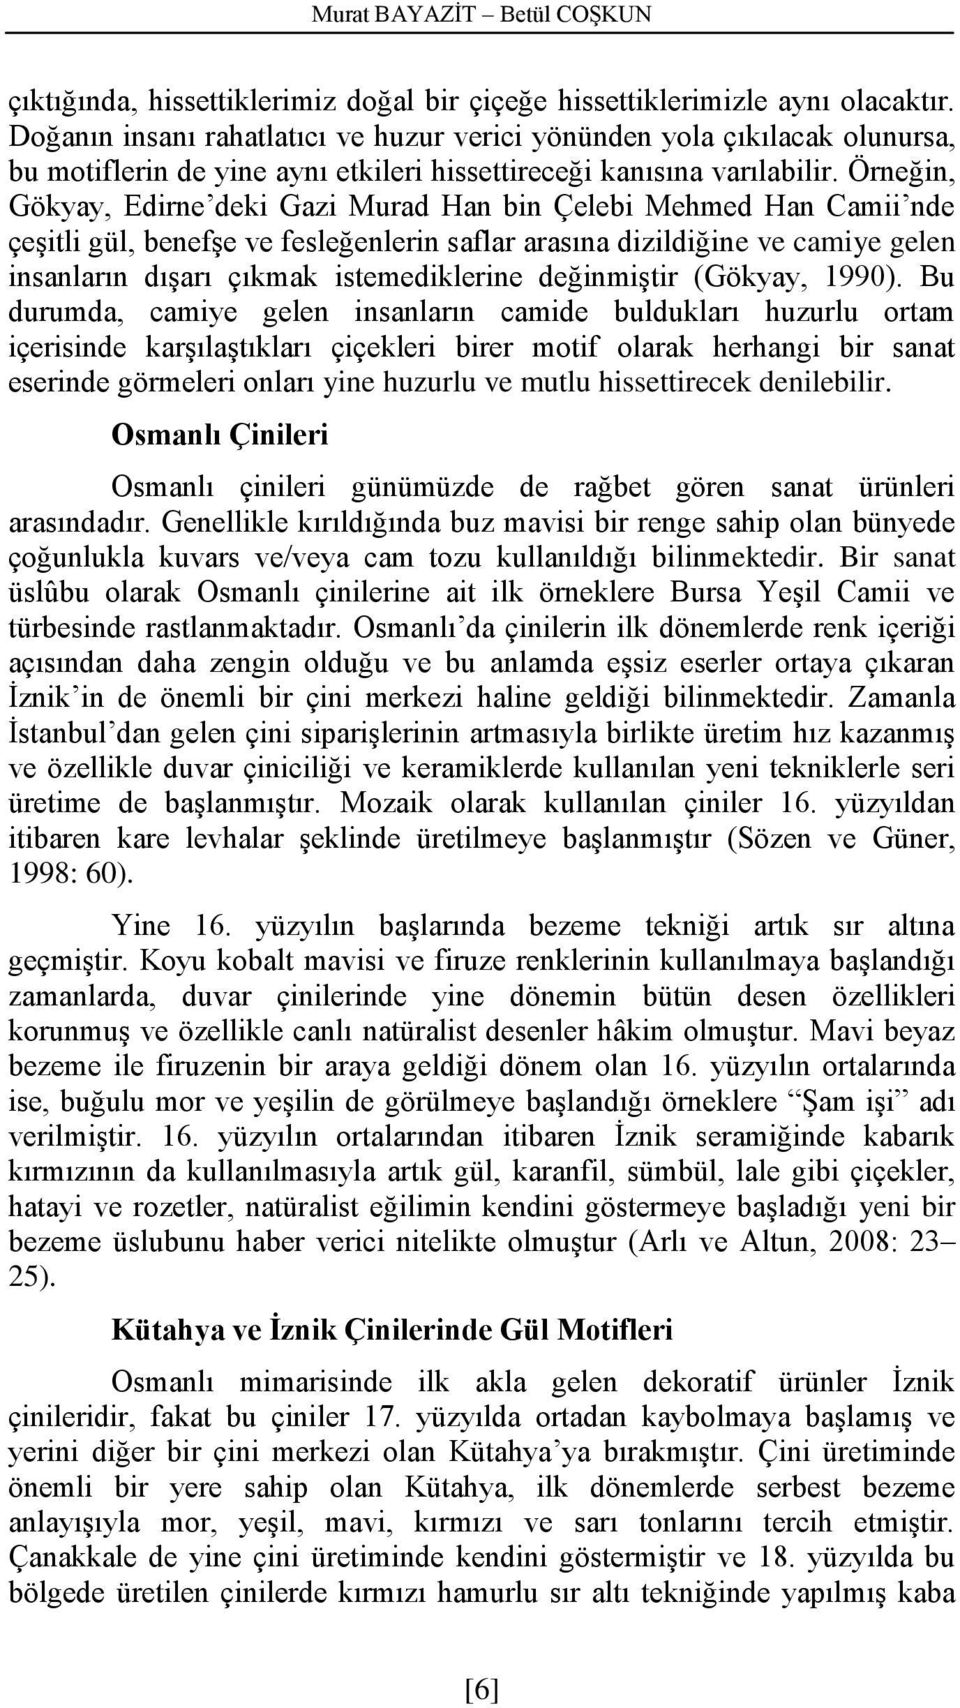 Örneğin, Gökyay, Edirne deki Gazi Murad Han bin Çelebi Mehmed Han Camii nde çeşitli gül, benefşe ve fesleğenlerin saflar arasına dizildiğine ve camiye gelen insanların dışarı çıkmak istemediklerine